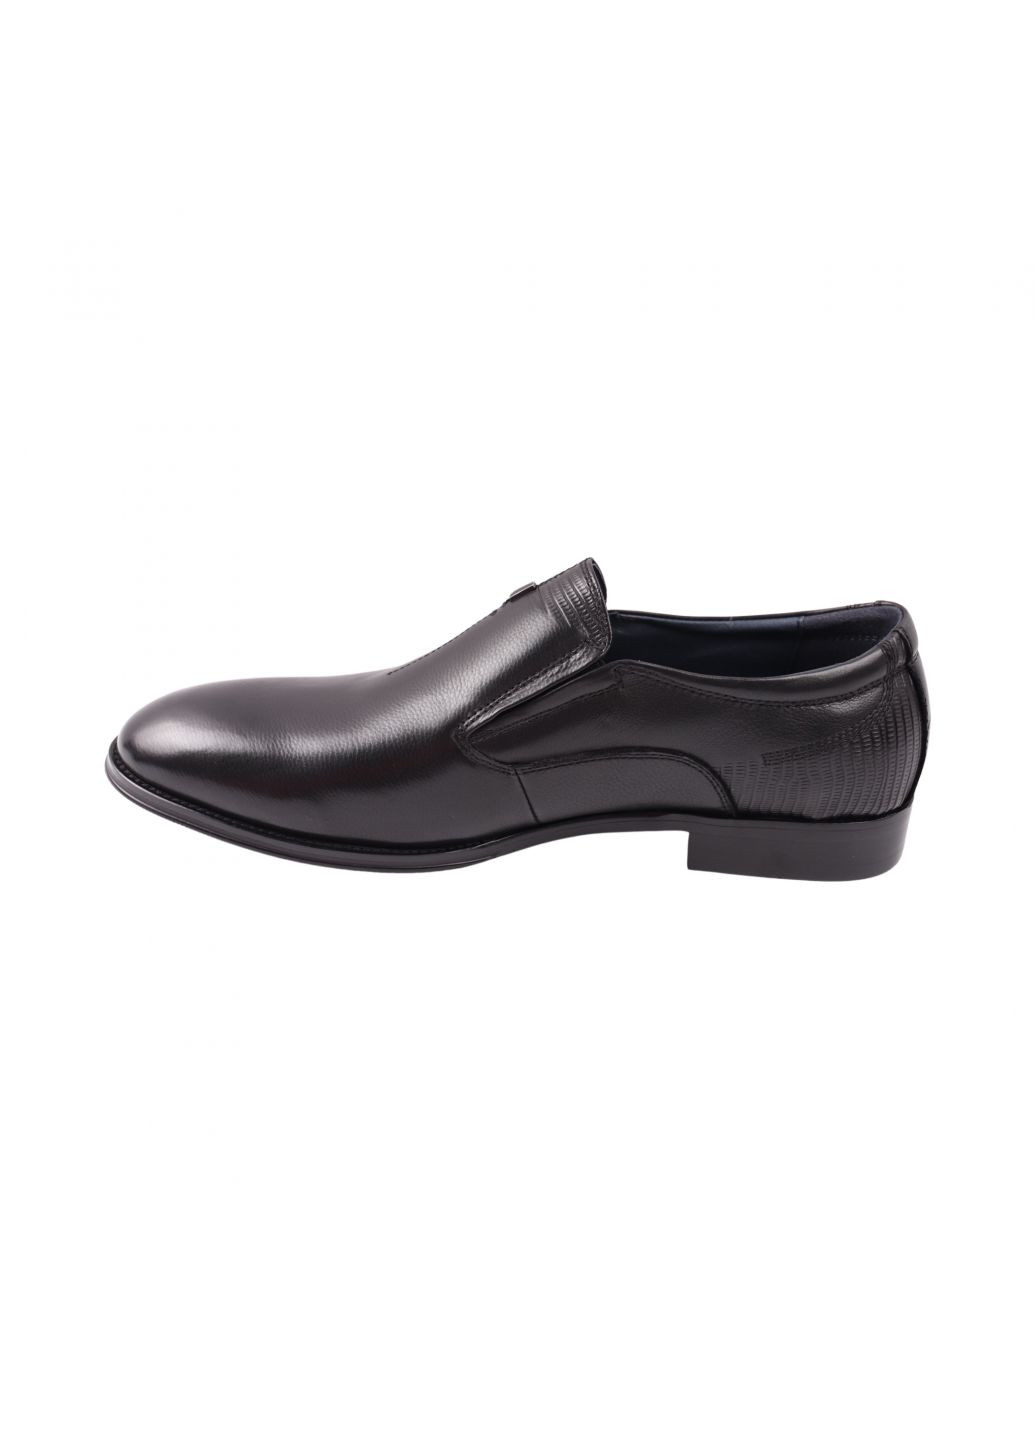 Туфлі чоловічі чорні натуральна шкіра Brooman 998-24dt (277753131)